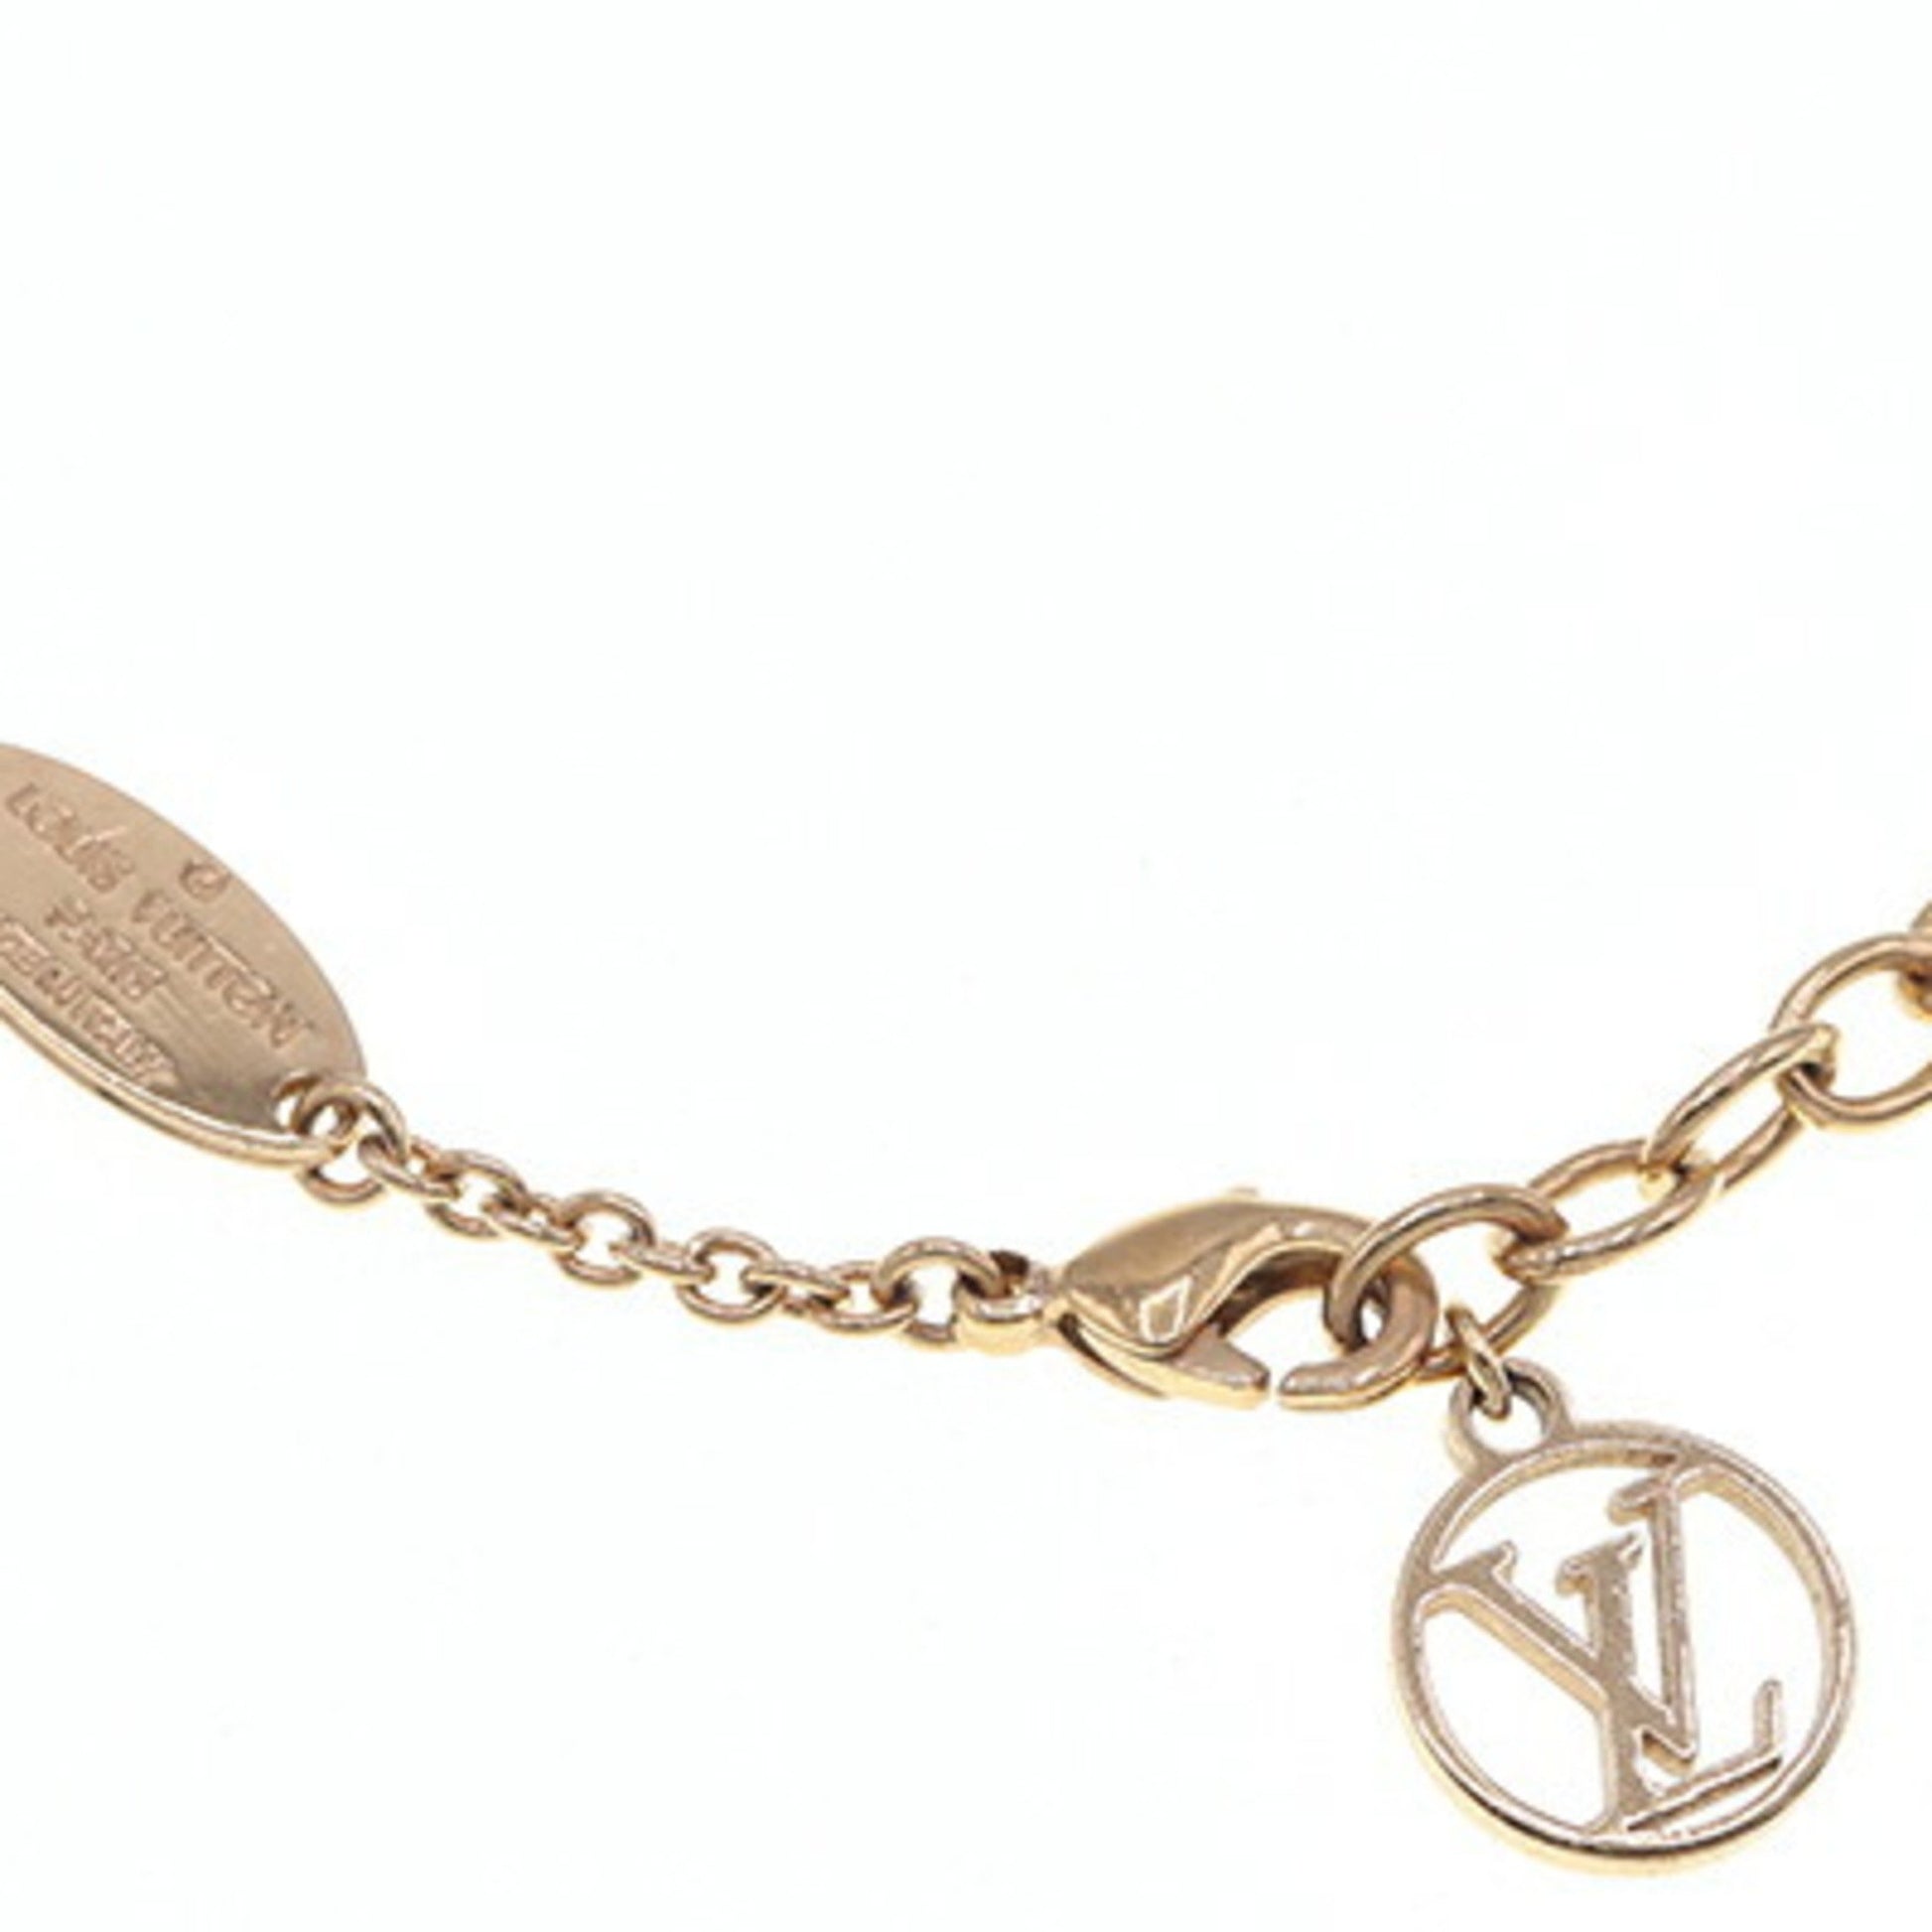 Shop Louis Vuitton Lv iconic bracelet (M00587) by BeBeauty